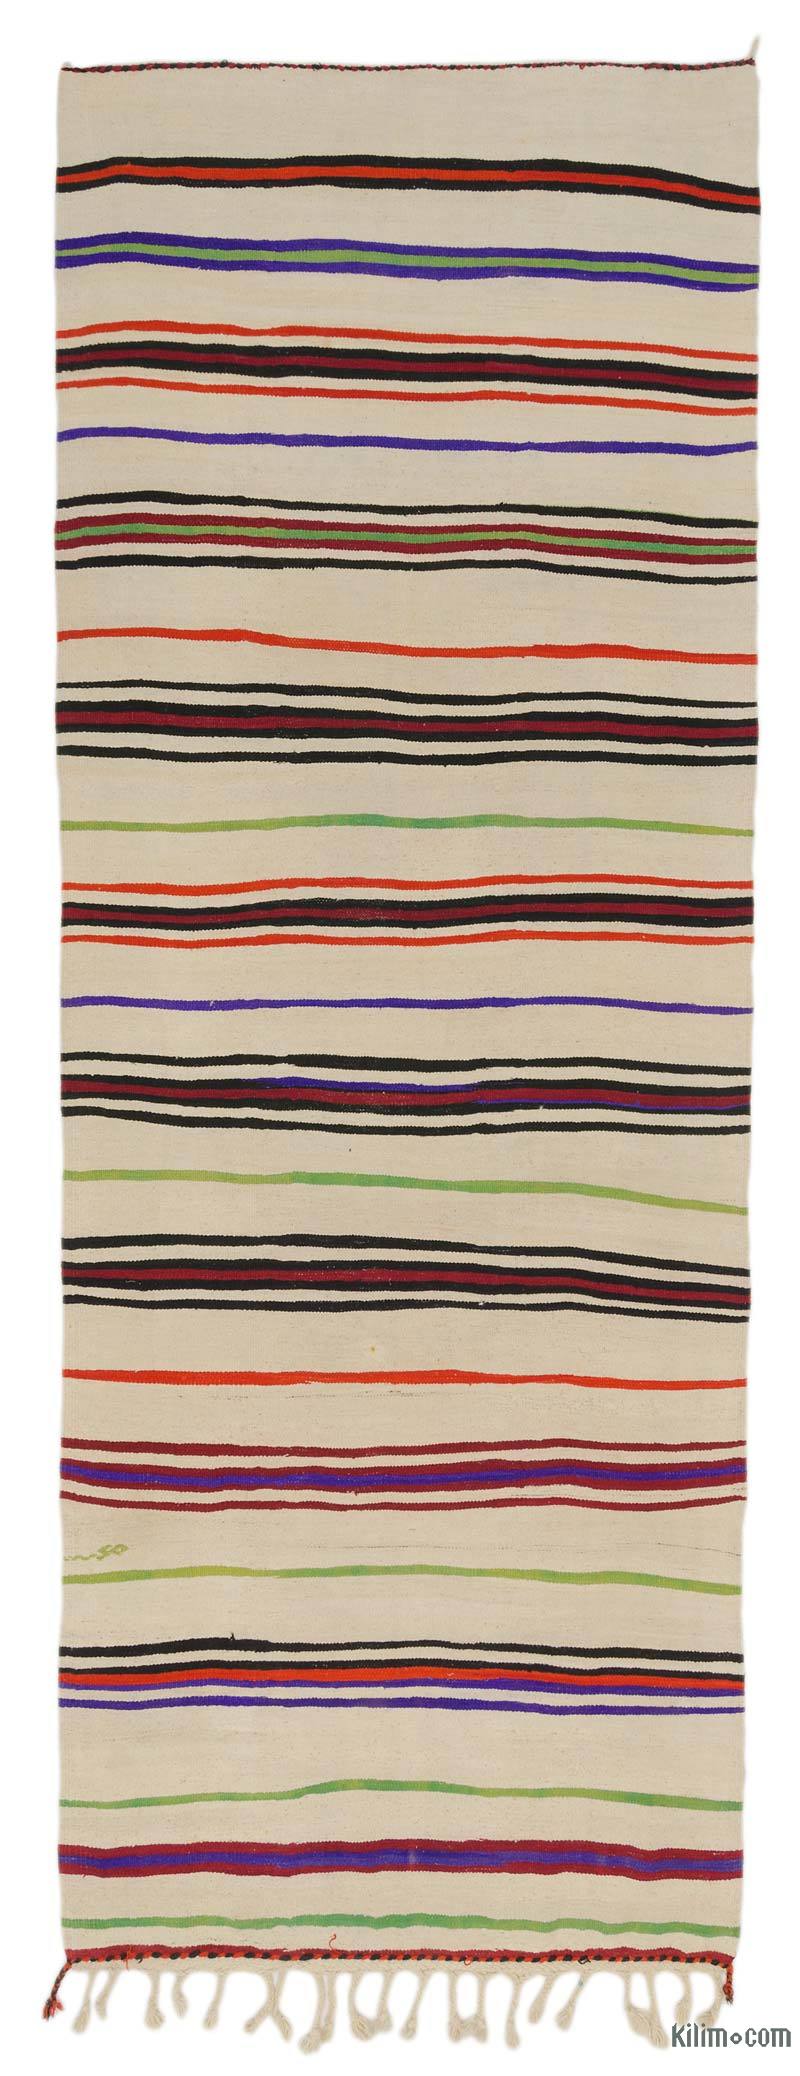 Beige, Multicolor Vintage Turkish Kilim Rug - 4' 6" x 12' 6" (54" x 150") - K0037889